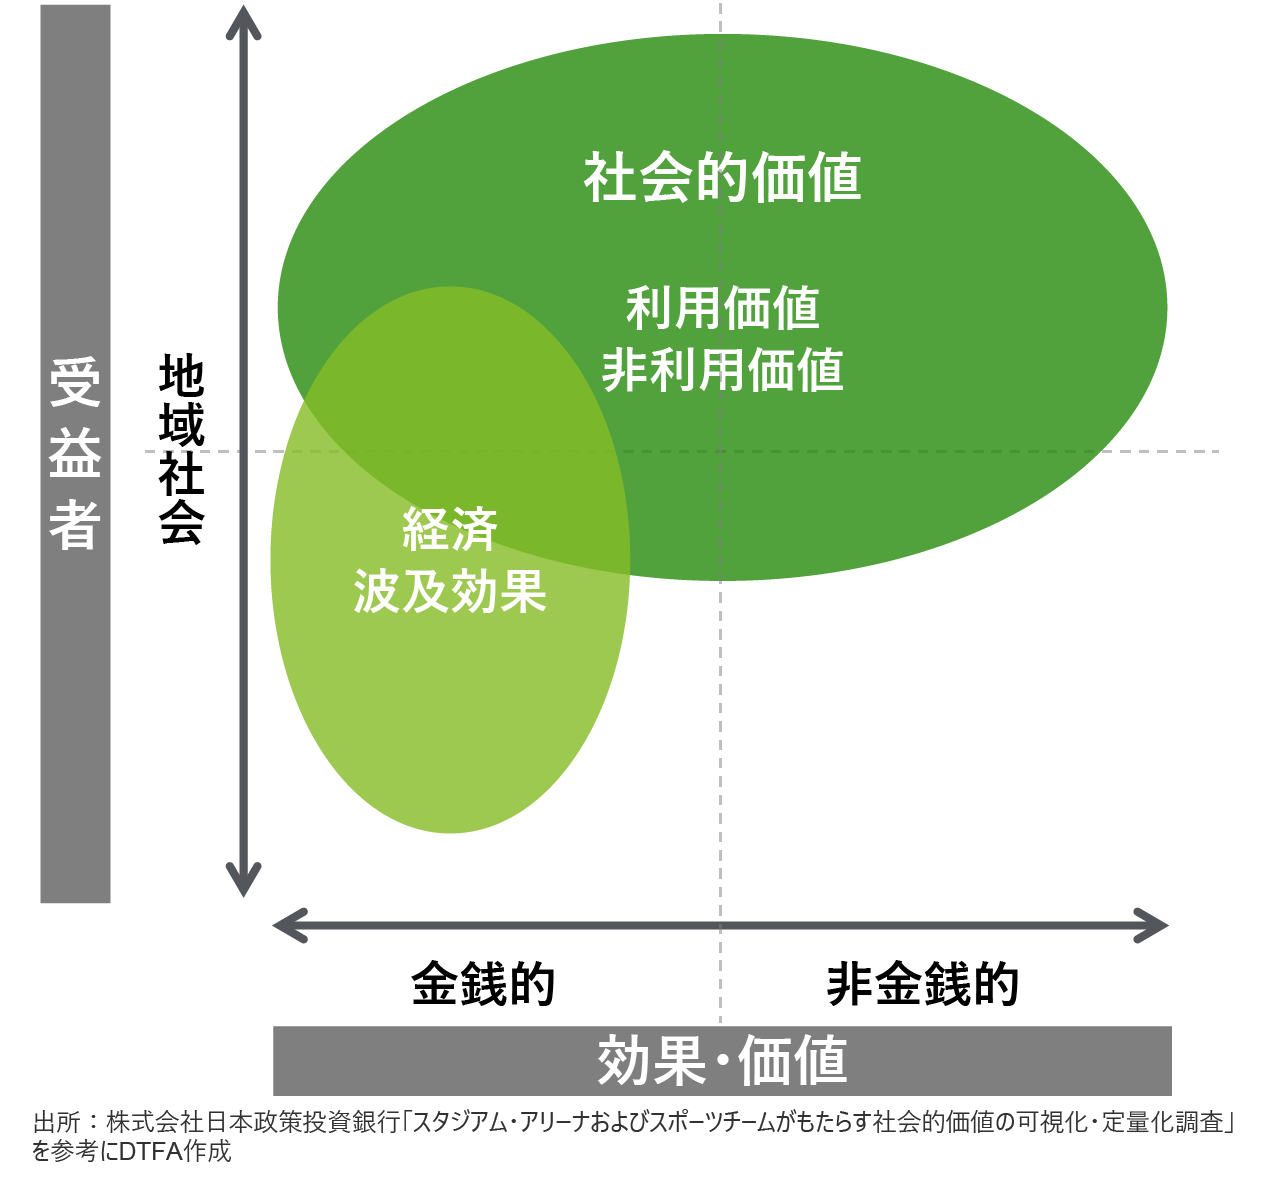 図1:受益者と効果・価値の2軸からなる社会的価値のマップ